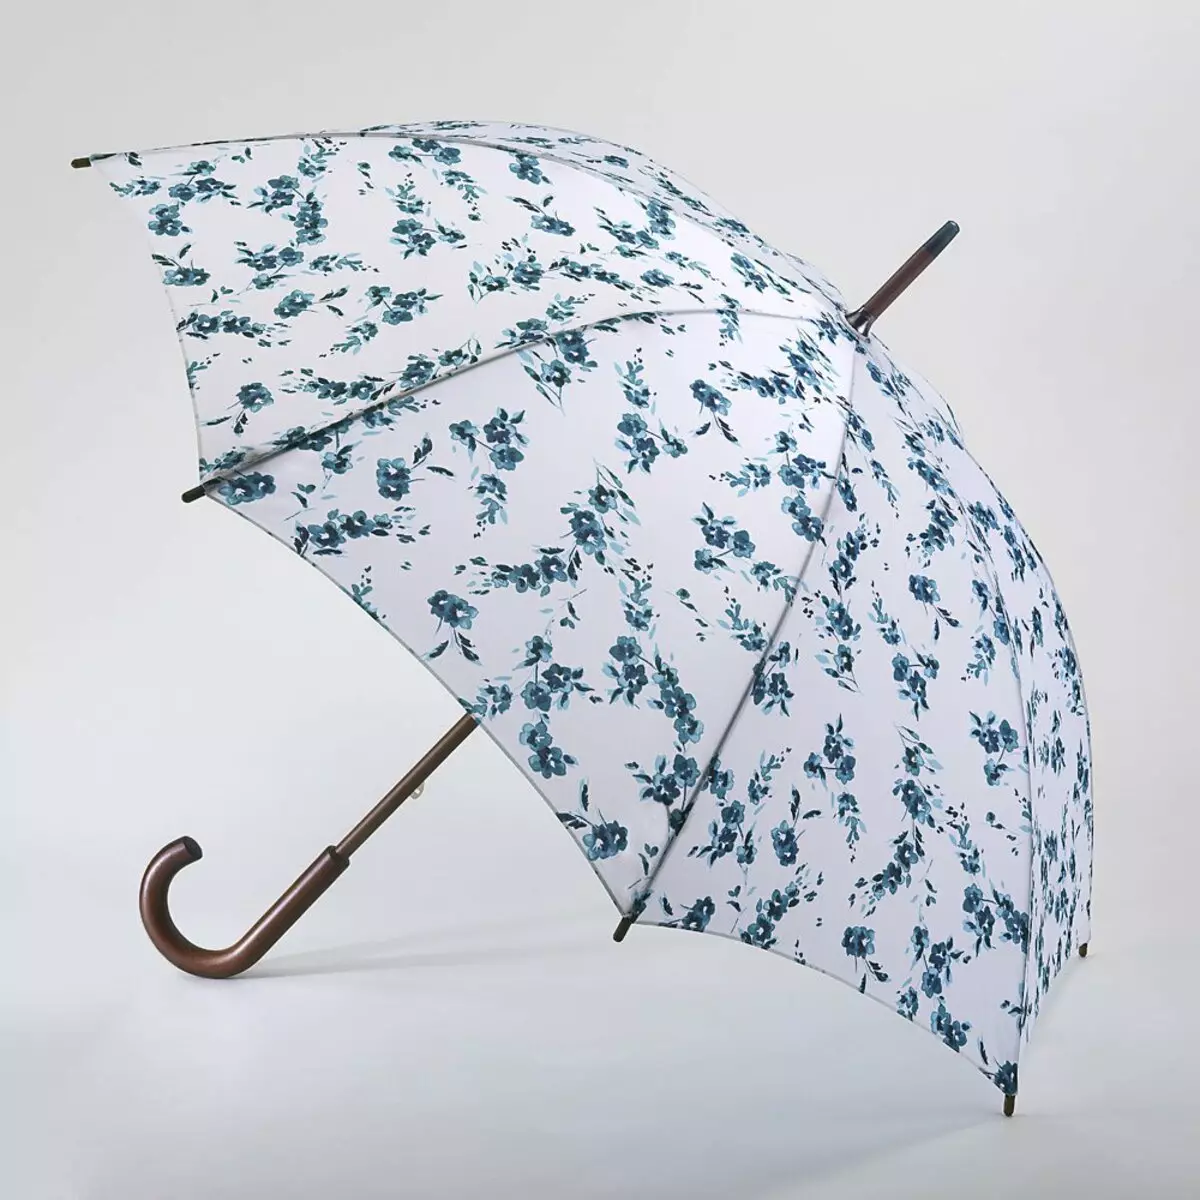 Fulton Umbrellas (53 fotos): skaaimerken fan modellen en resinsjes oer Umbrellas 15229_18